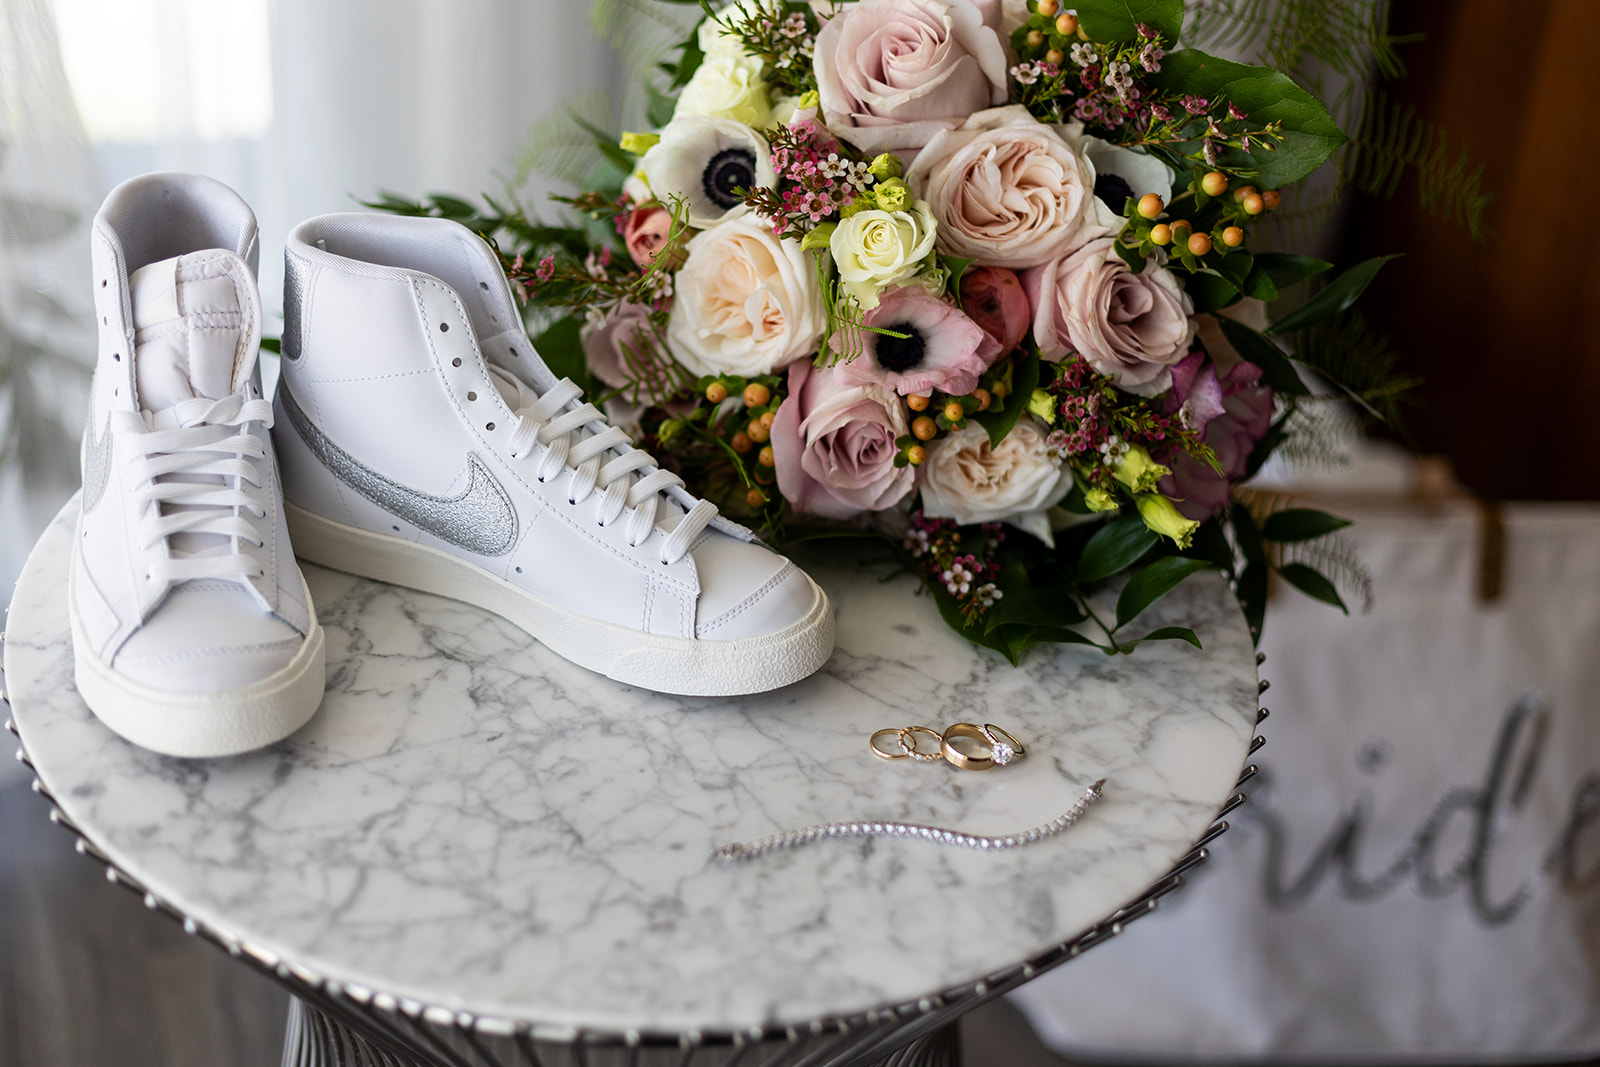 Bride's Converse Reception Shoes